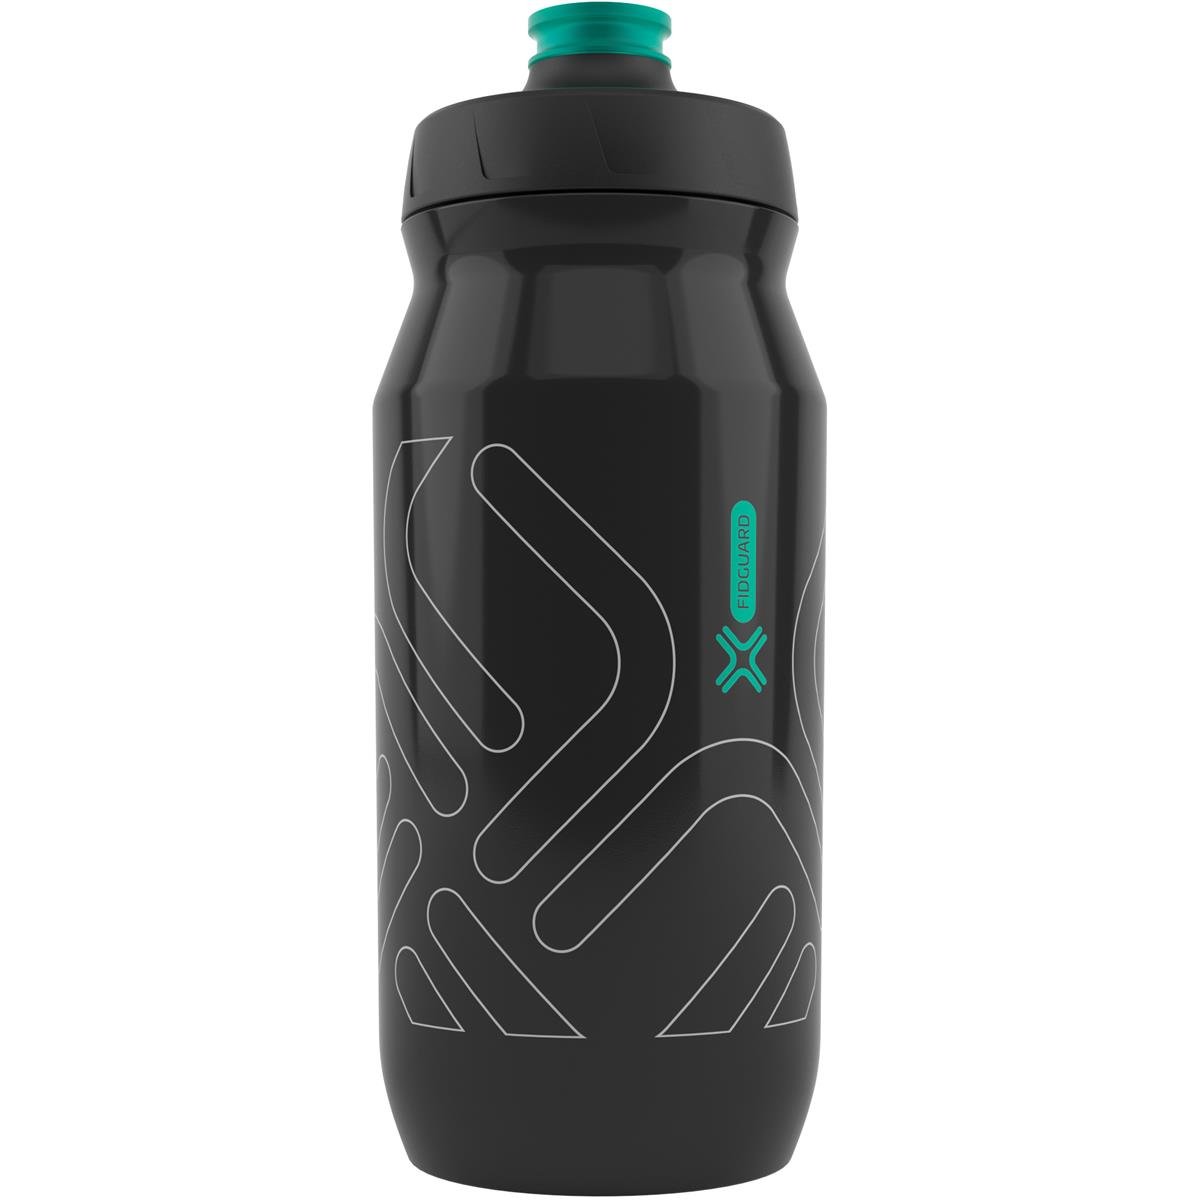 Fidlock Water Bottle Fidguard Transparent Black / Light Gray outline, 600 ml